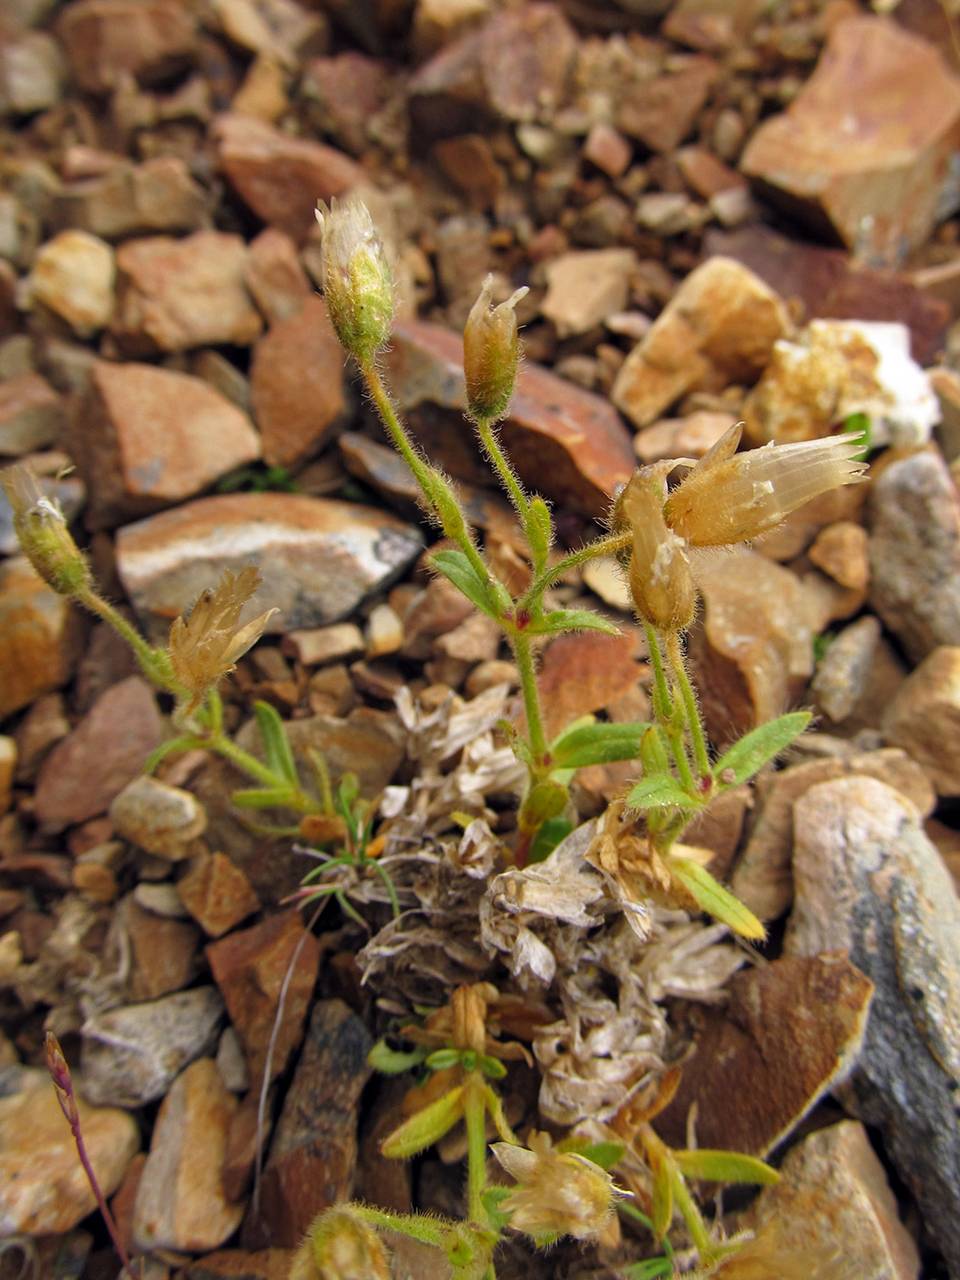 Cerastium aleuticum Hultén, Siberia, Chukotka & Kamchatka (S7) (Russia)